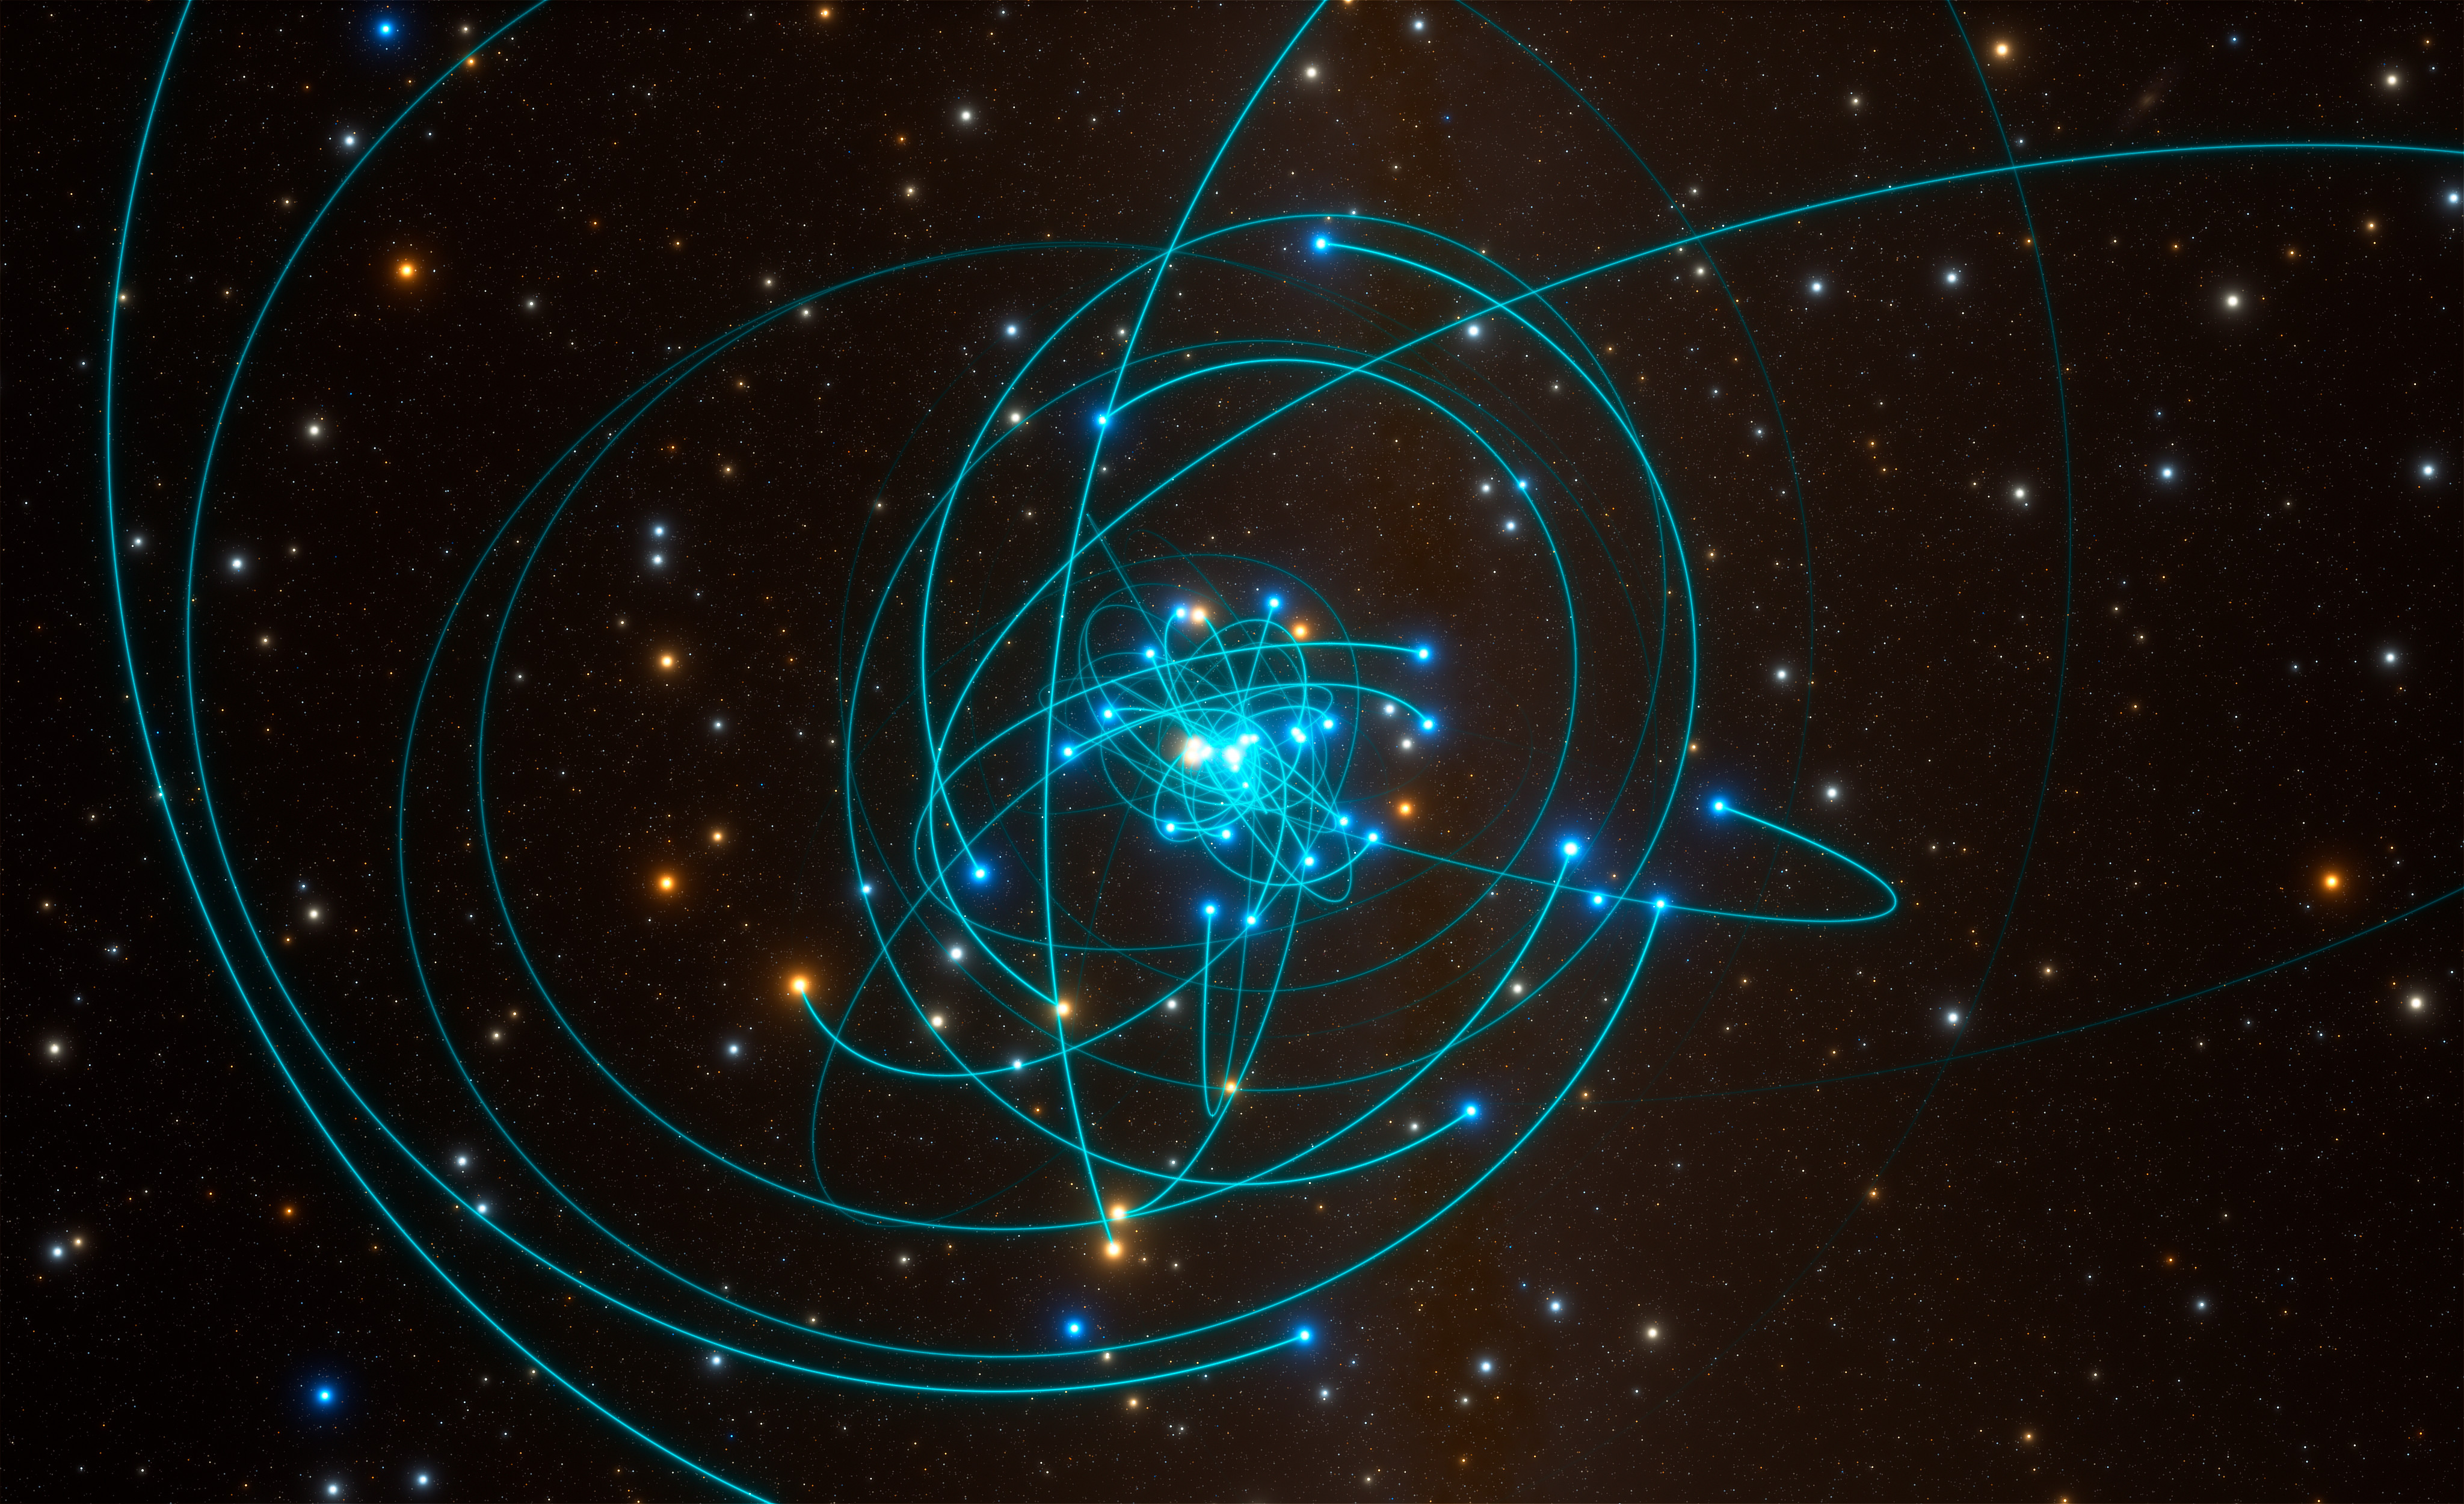 Esta simulación muestra las órbitas de las estrellas muy cerca del agujero negro supermasivo en el centro de la Vía Láctea. Crédito: ESO/L. Calçada/spaceengine.org